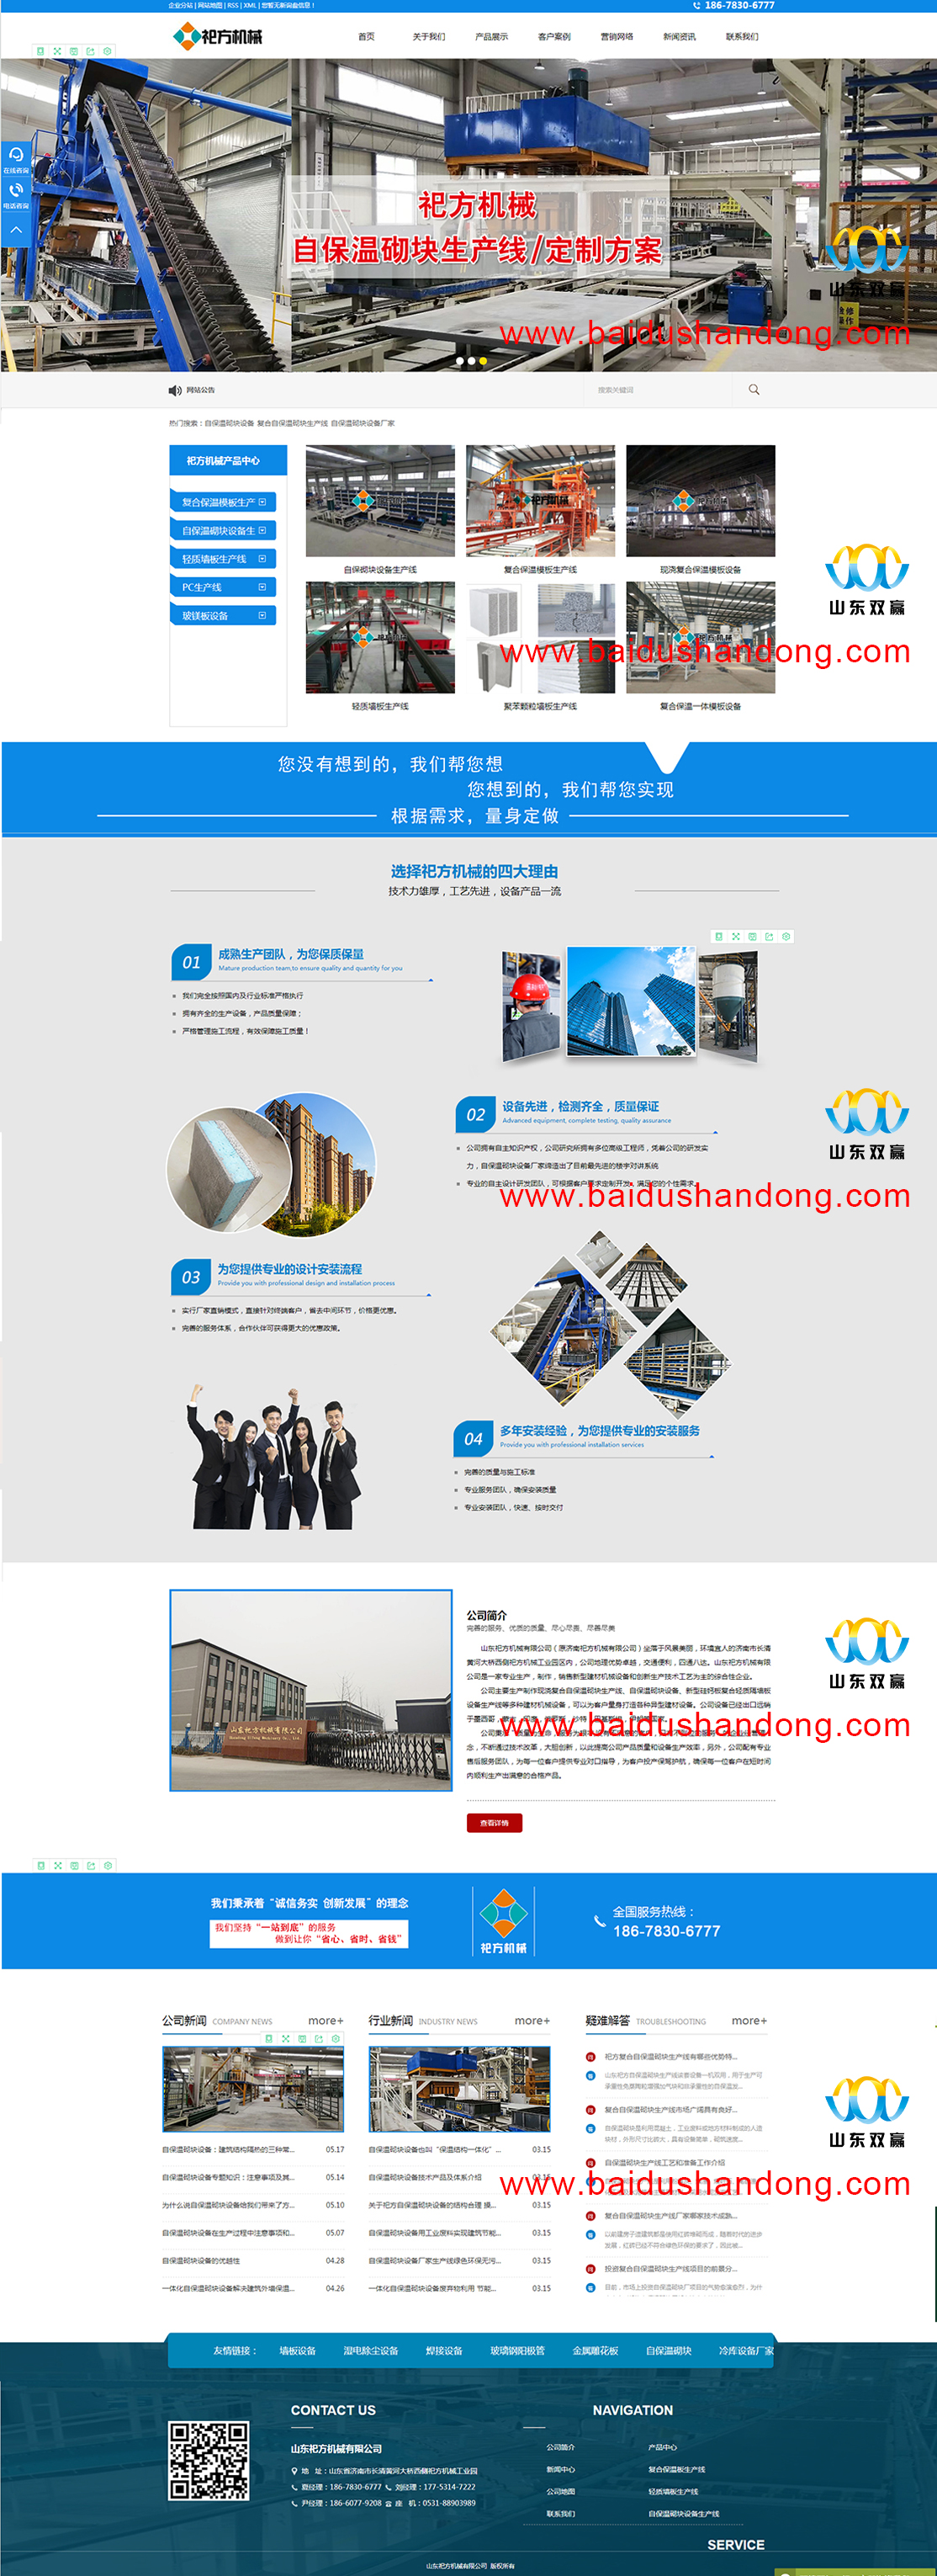 济南网页设计公司